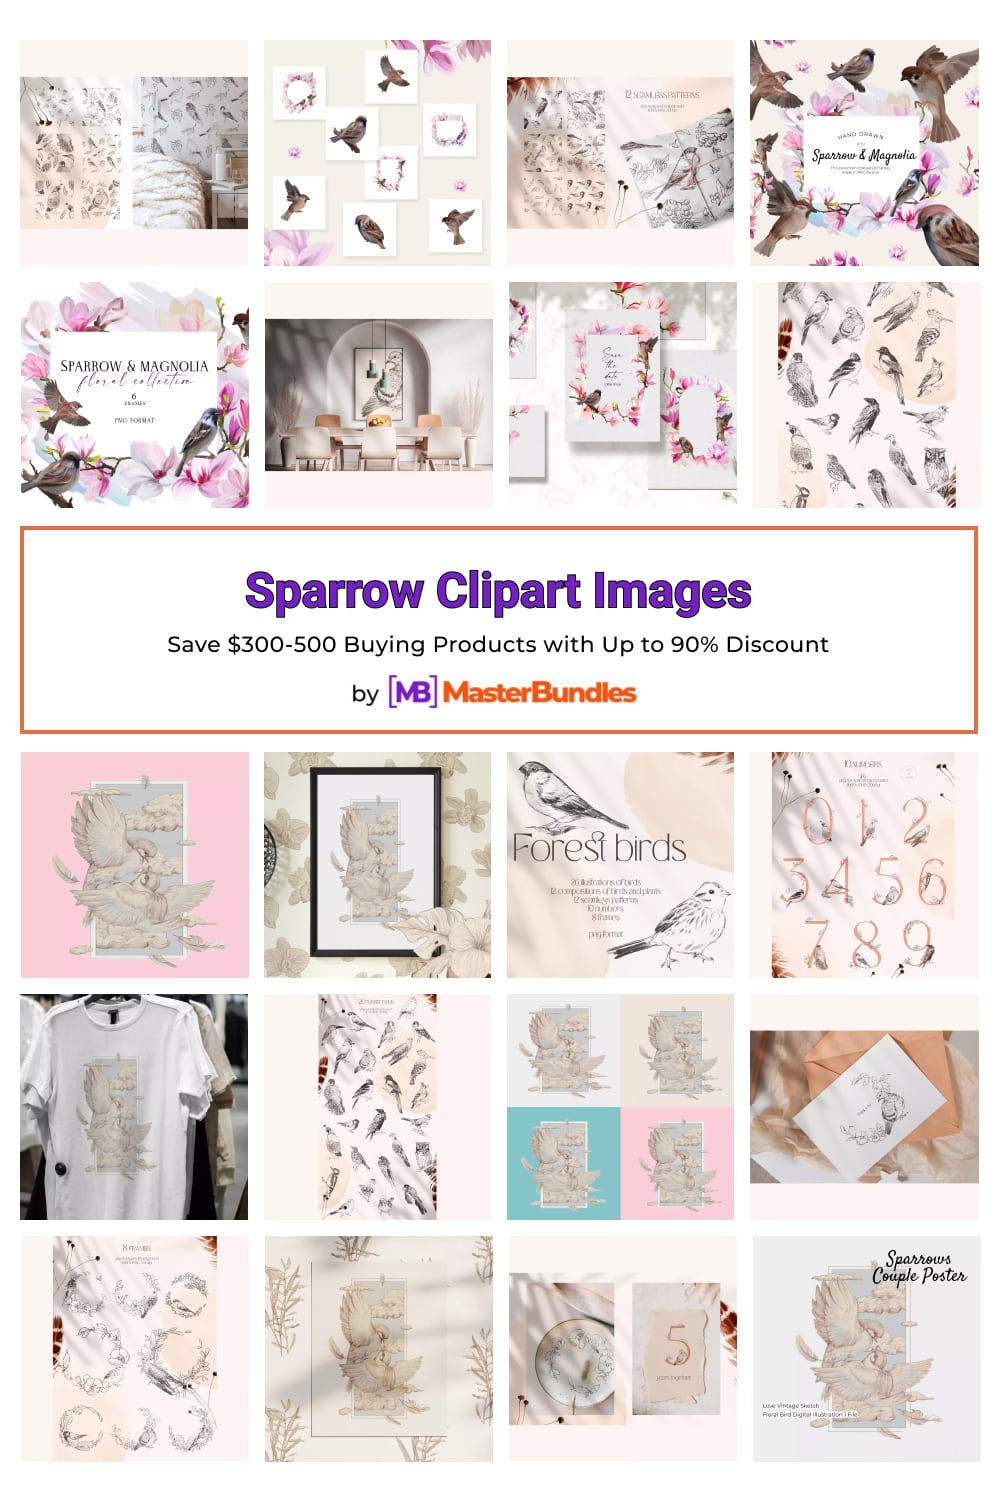 Sparrow Clipart Images Pinterest.